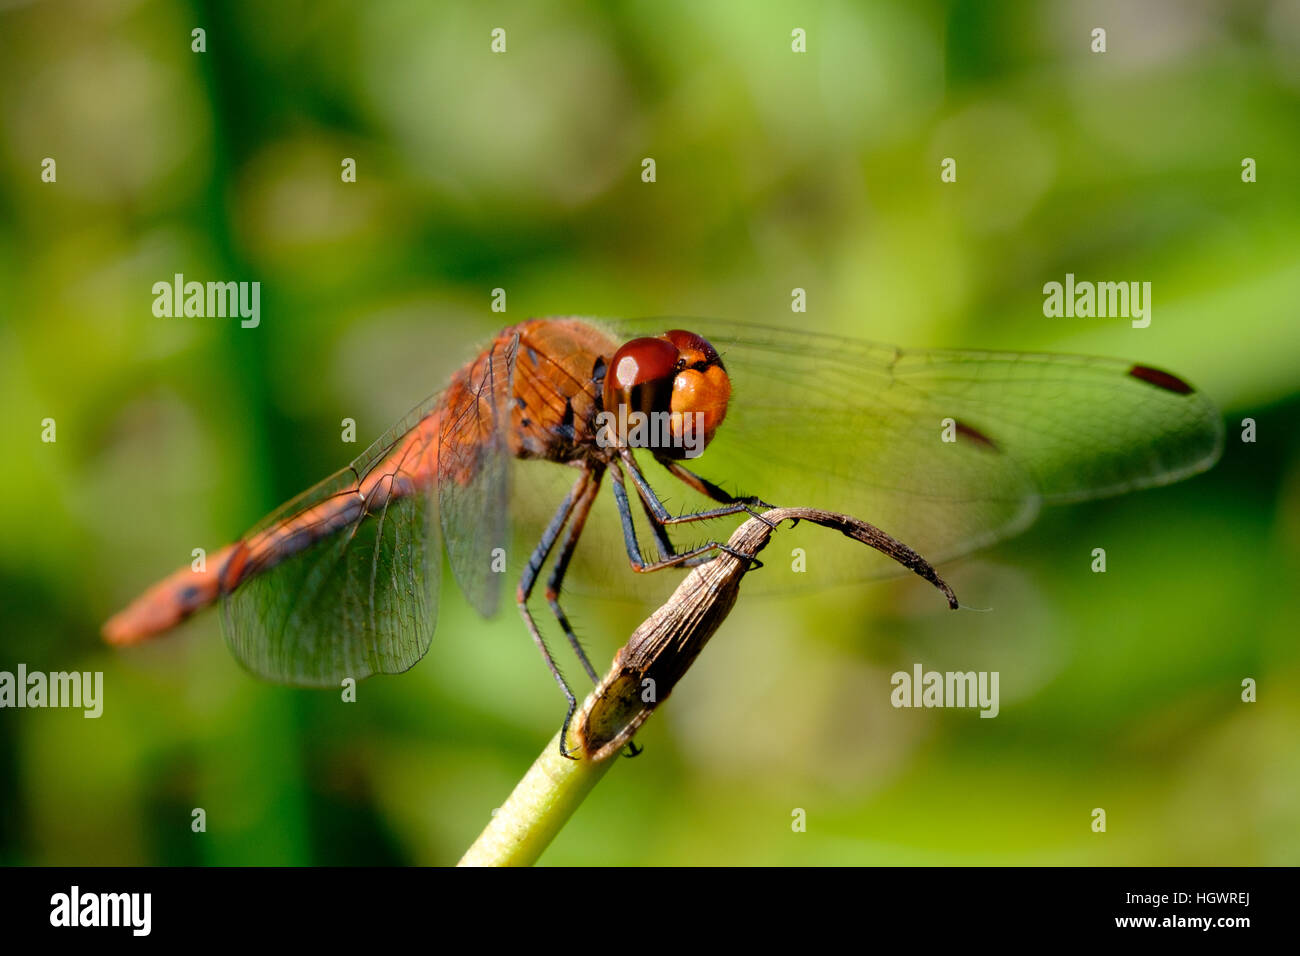 Gros plan d'une libellule reposant sur la pointe d'une tige de plante avec un accent sur l'œil rouge qui reflète le soleil, sur le point de décoller. Banque D'Images